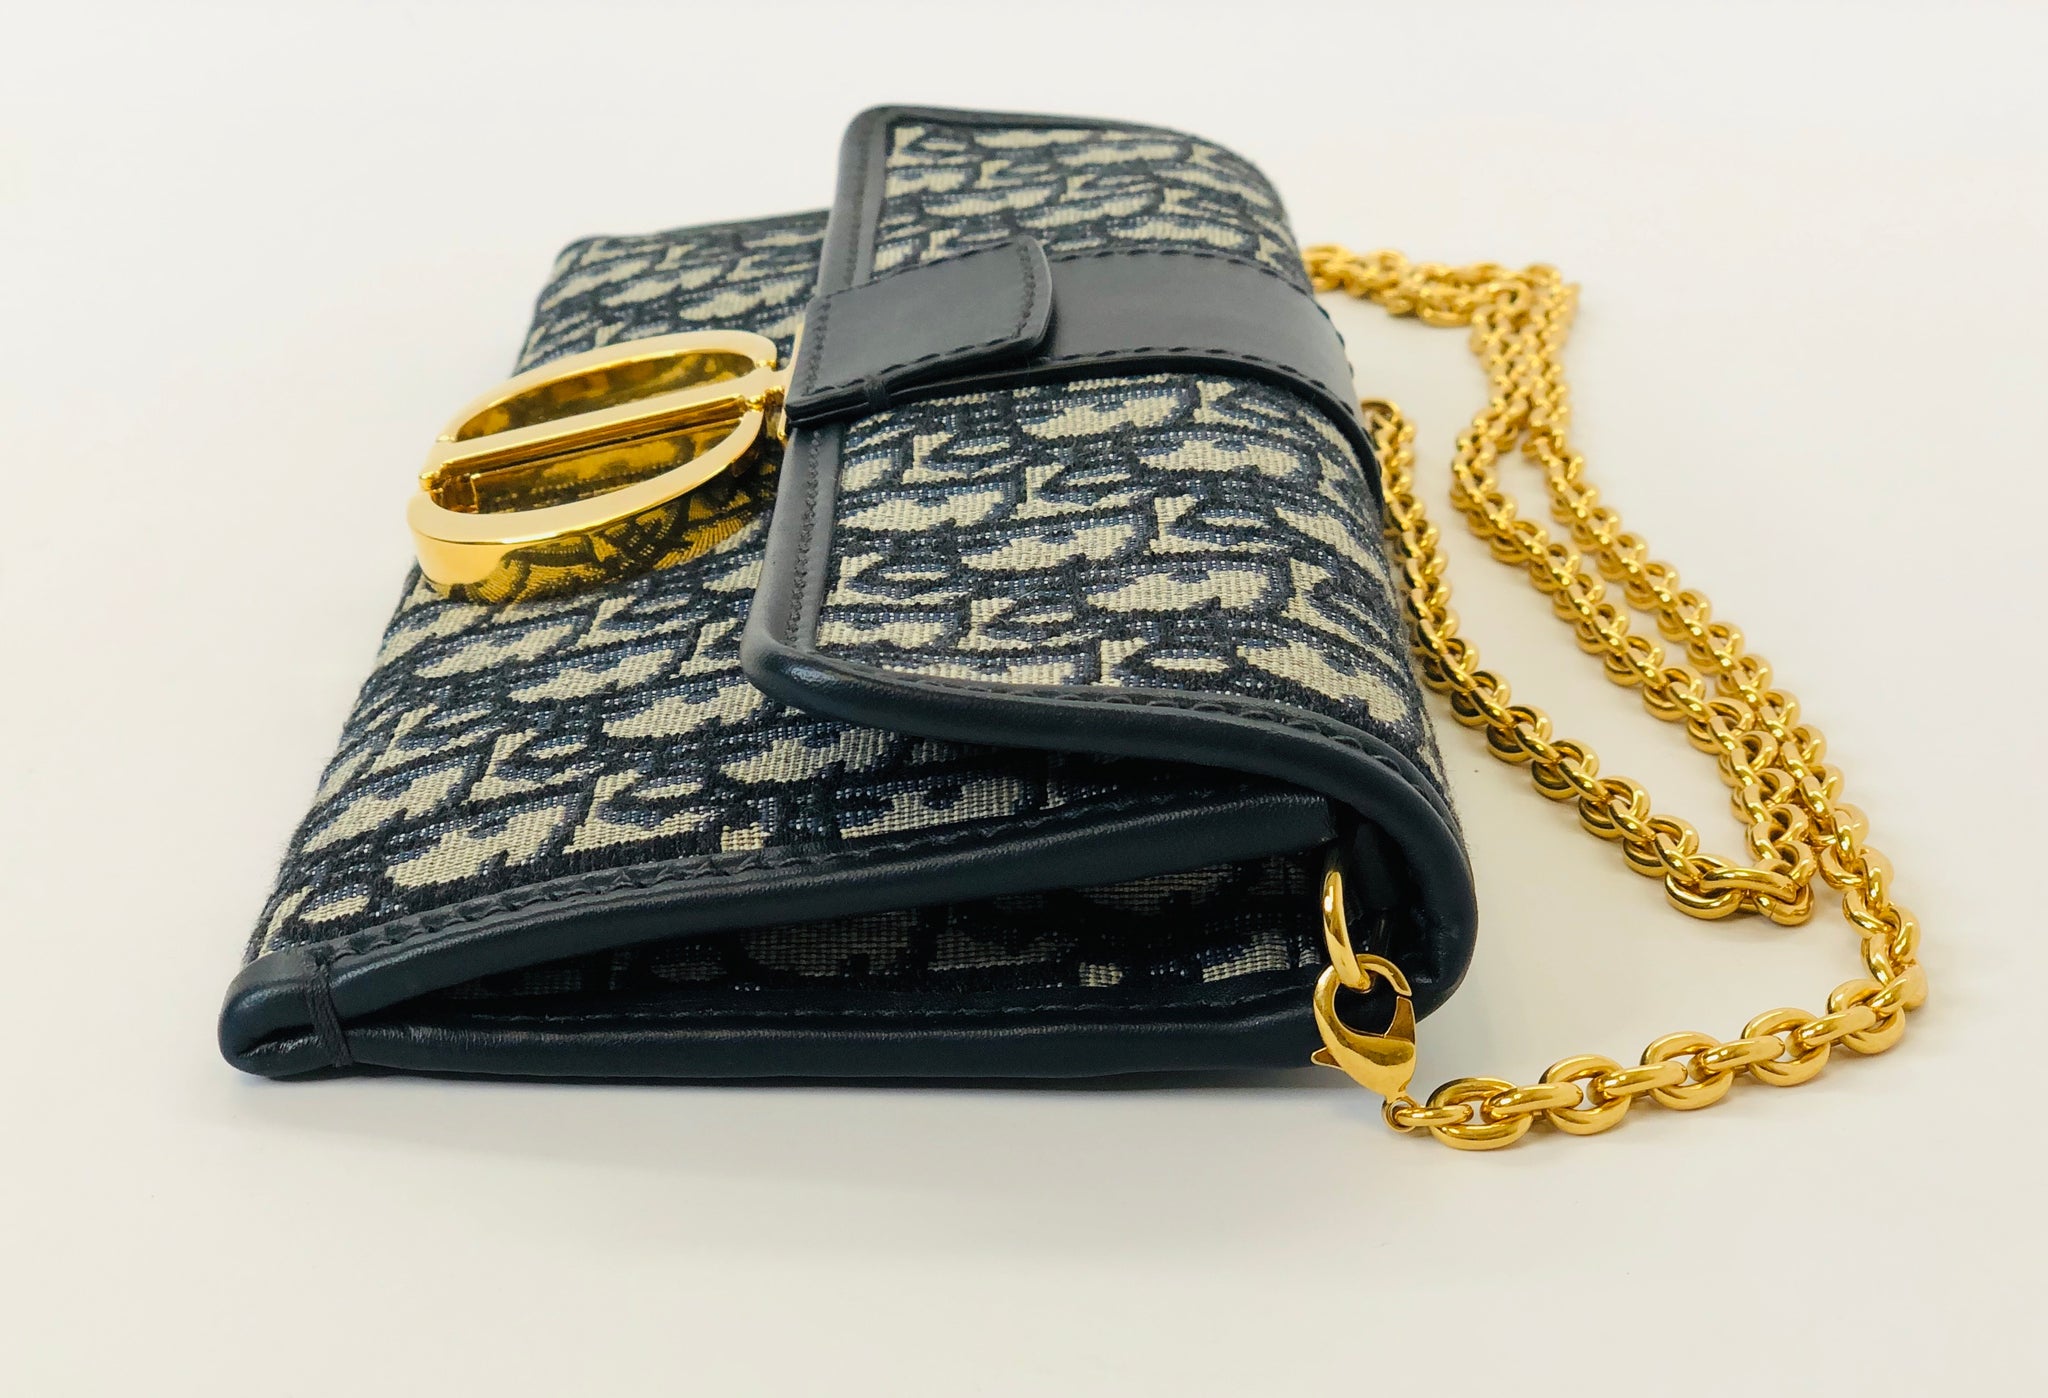 Blue Oblique Jacquard 30 Montaigne Bag - Women's Leather Bag